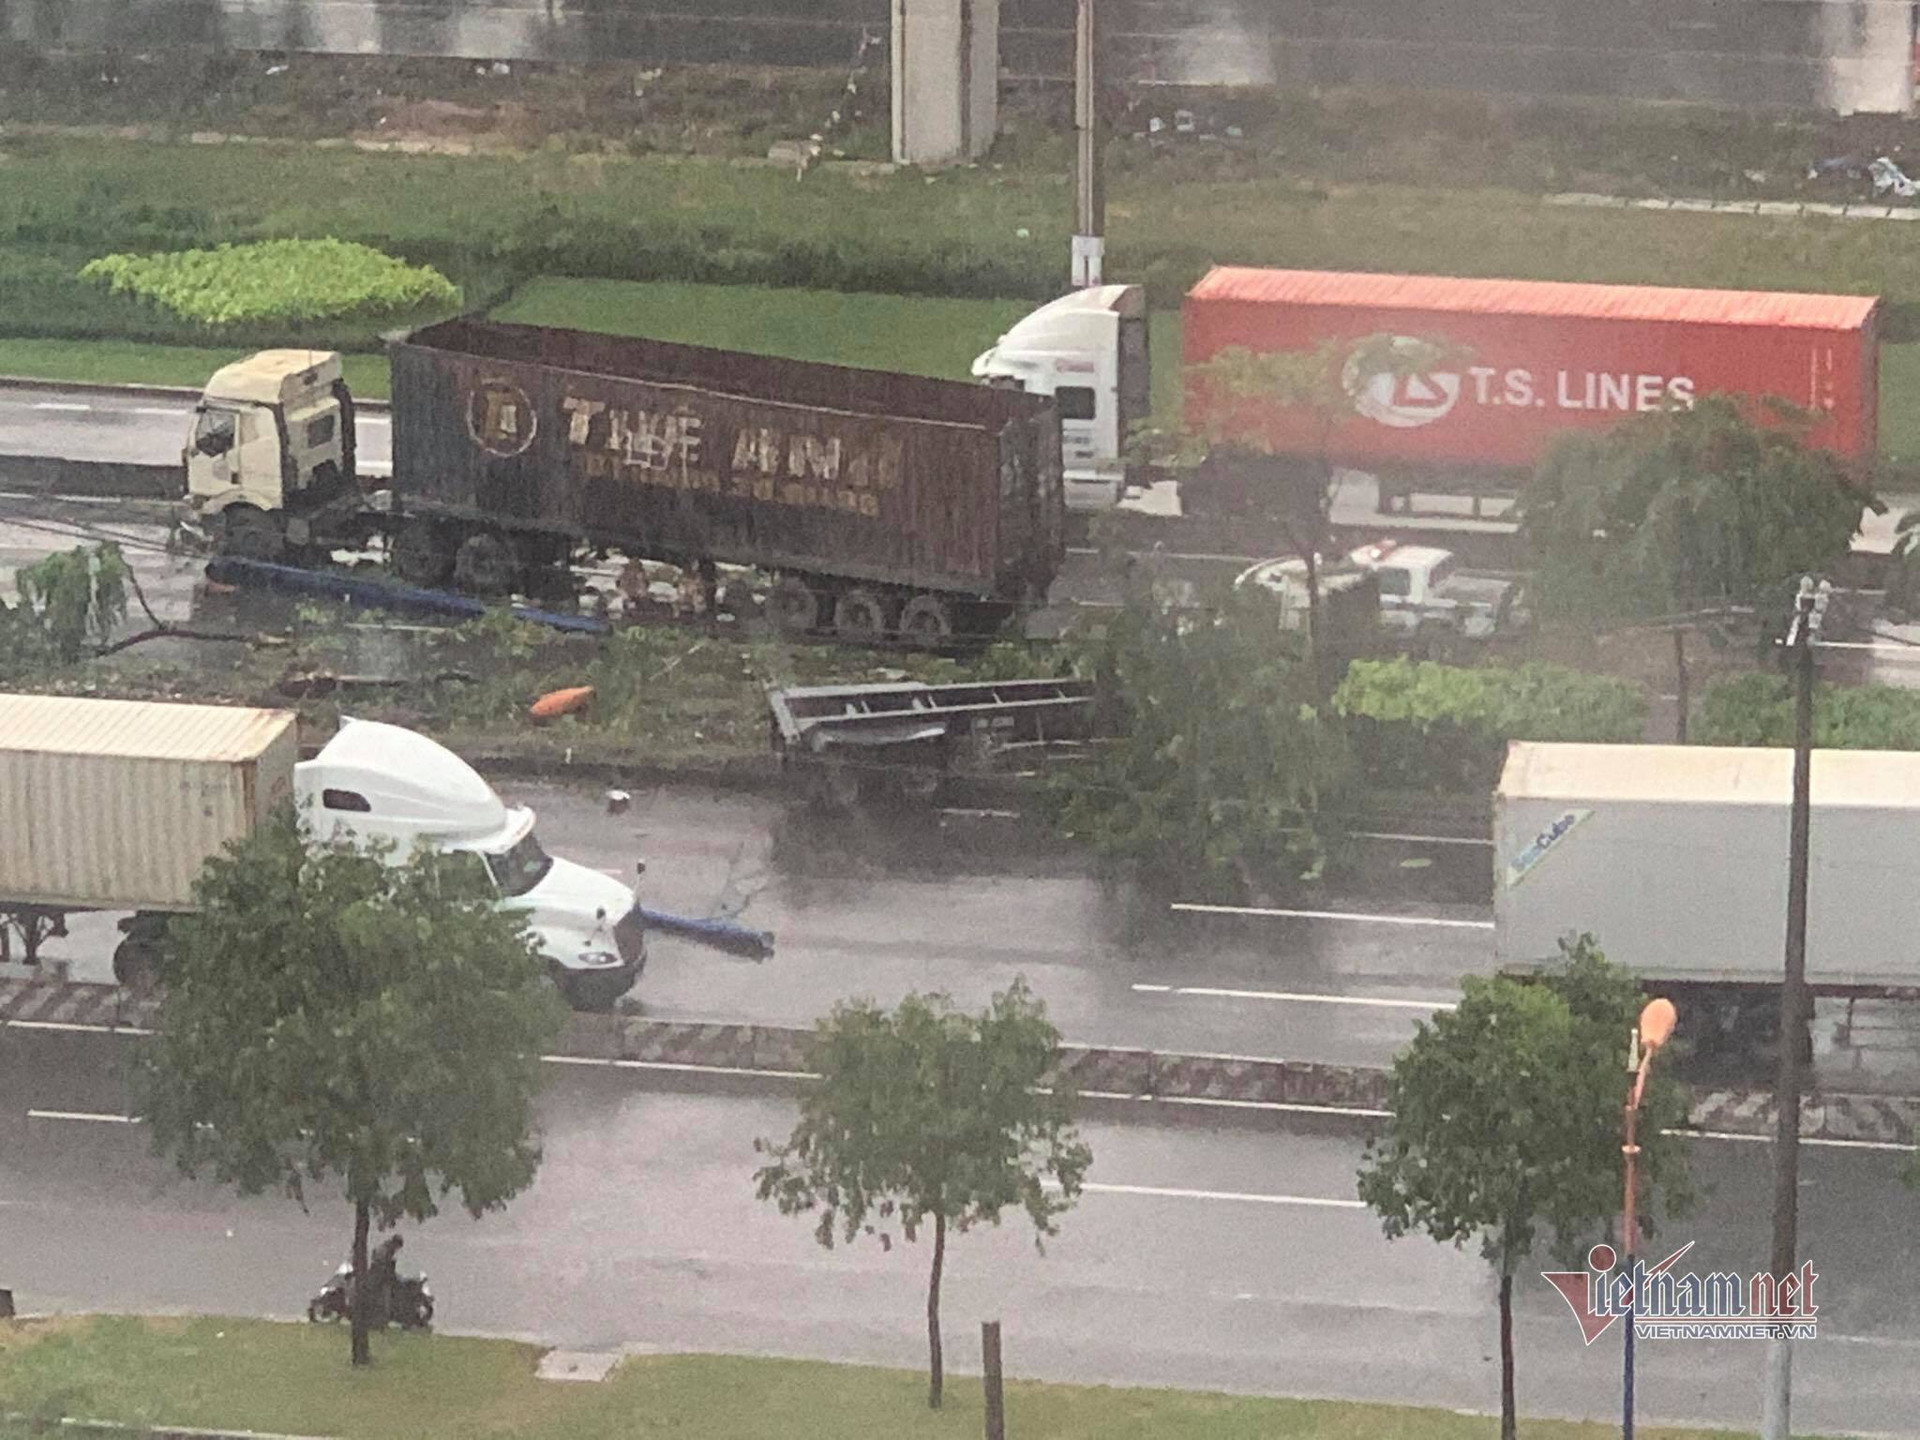 Xe container 'đại náo' xa lộ Hà Nội trong mưa lớn, giao thông rối loạn